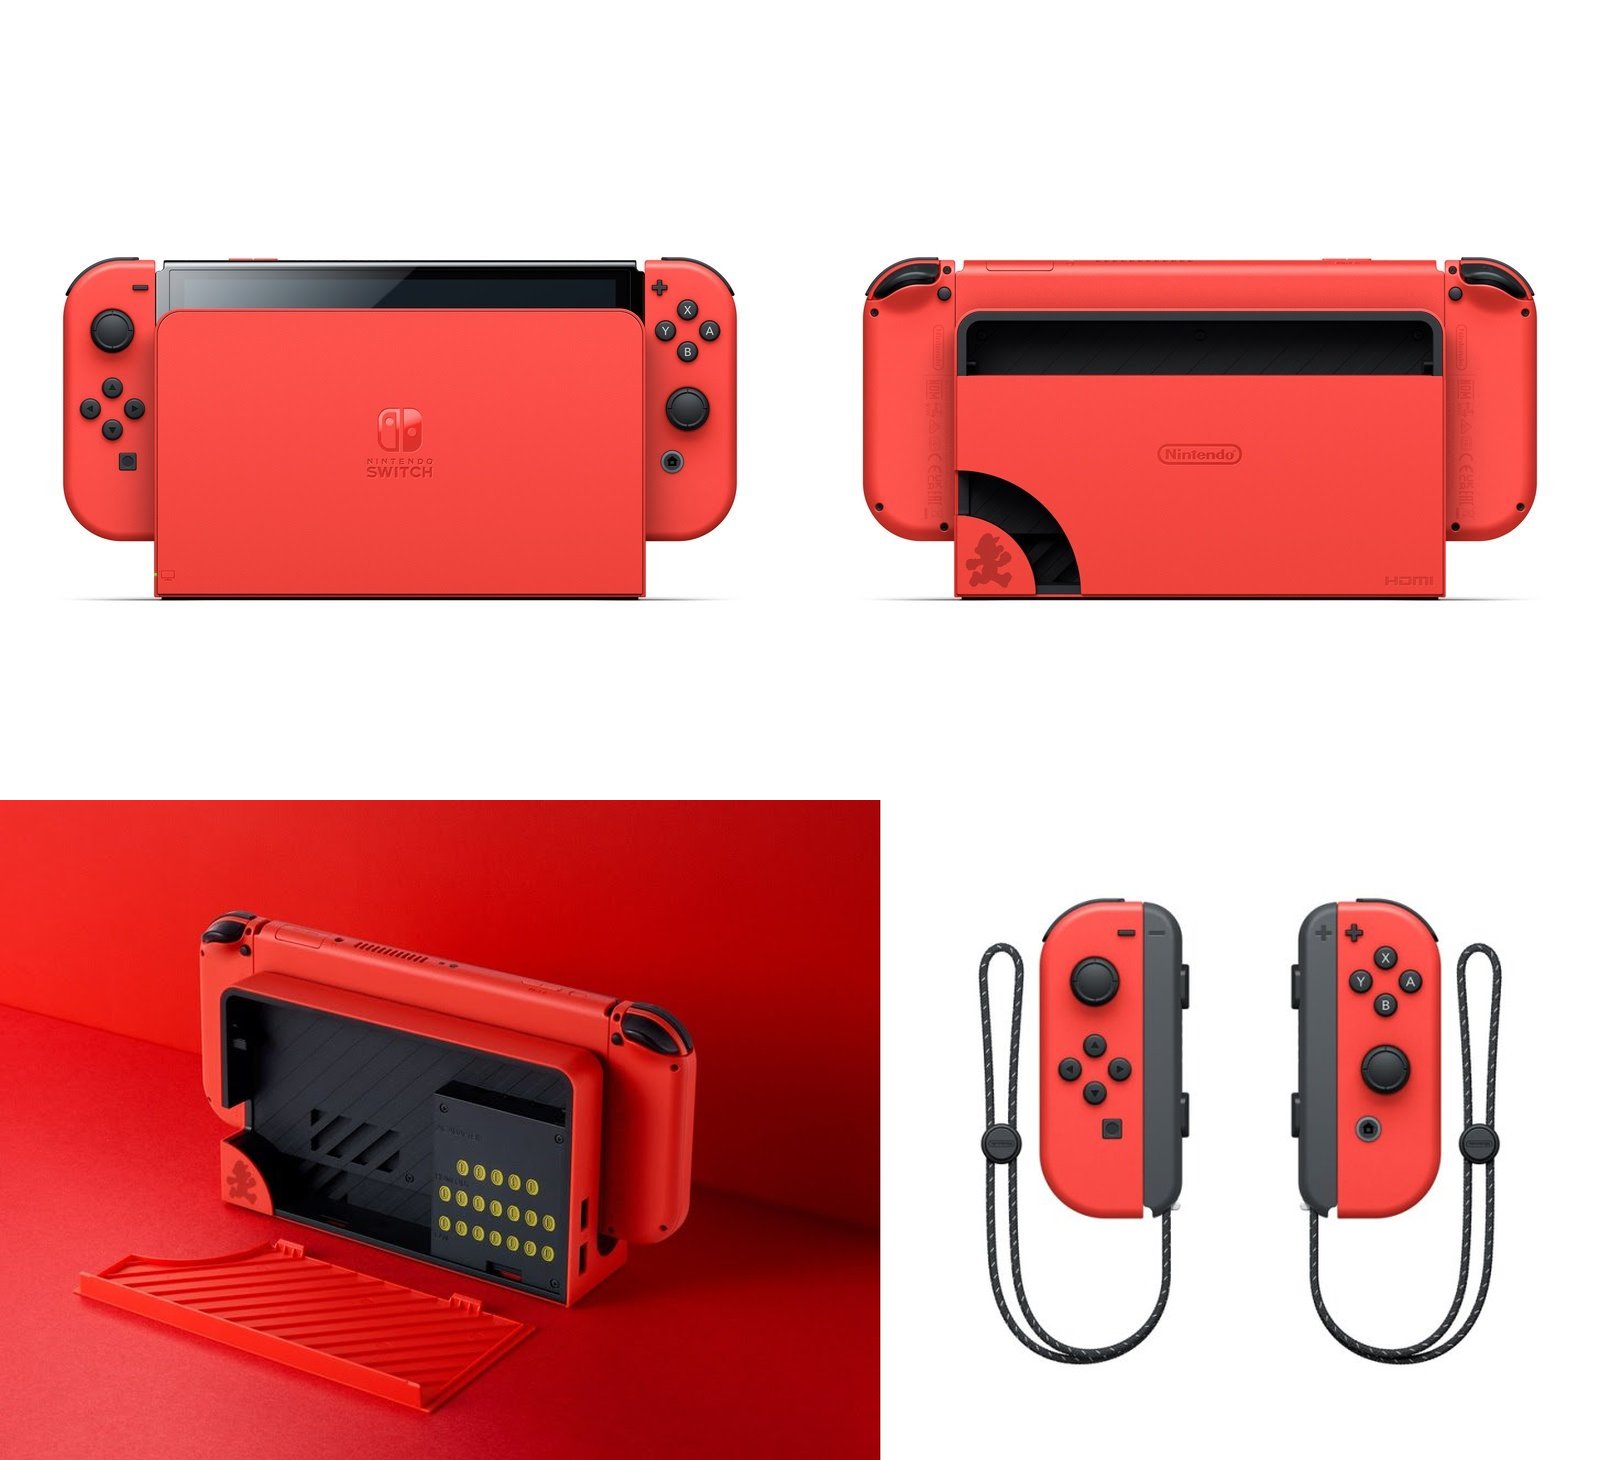 Novos modelos temáticos do Nintendo Switch são anunciados para o Brasil -  TGN